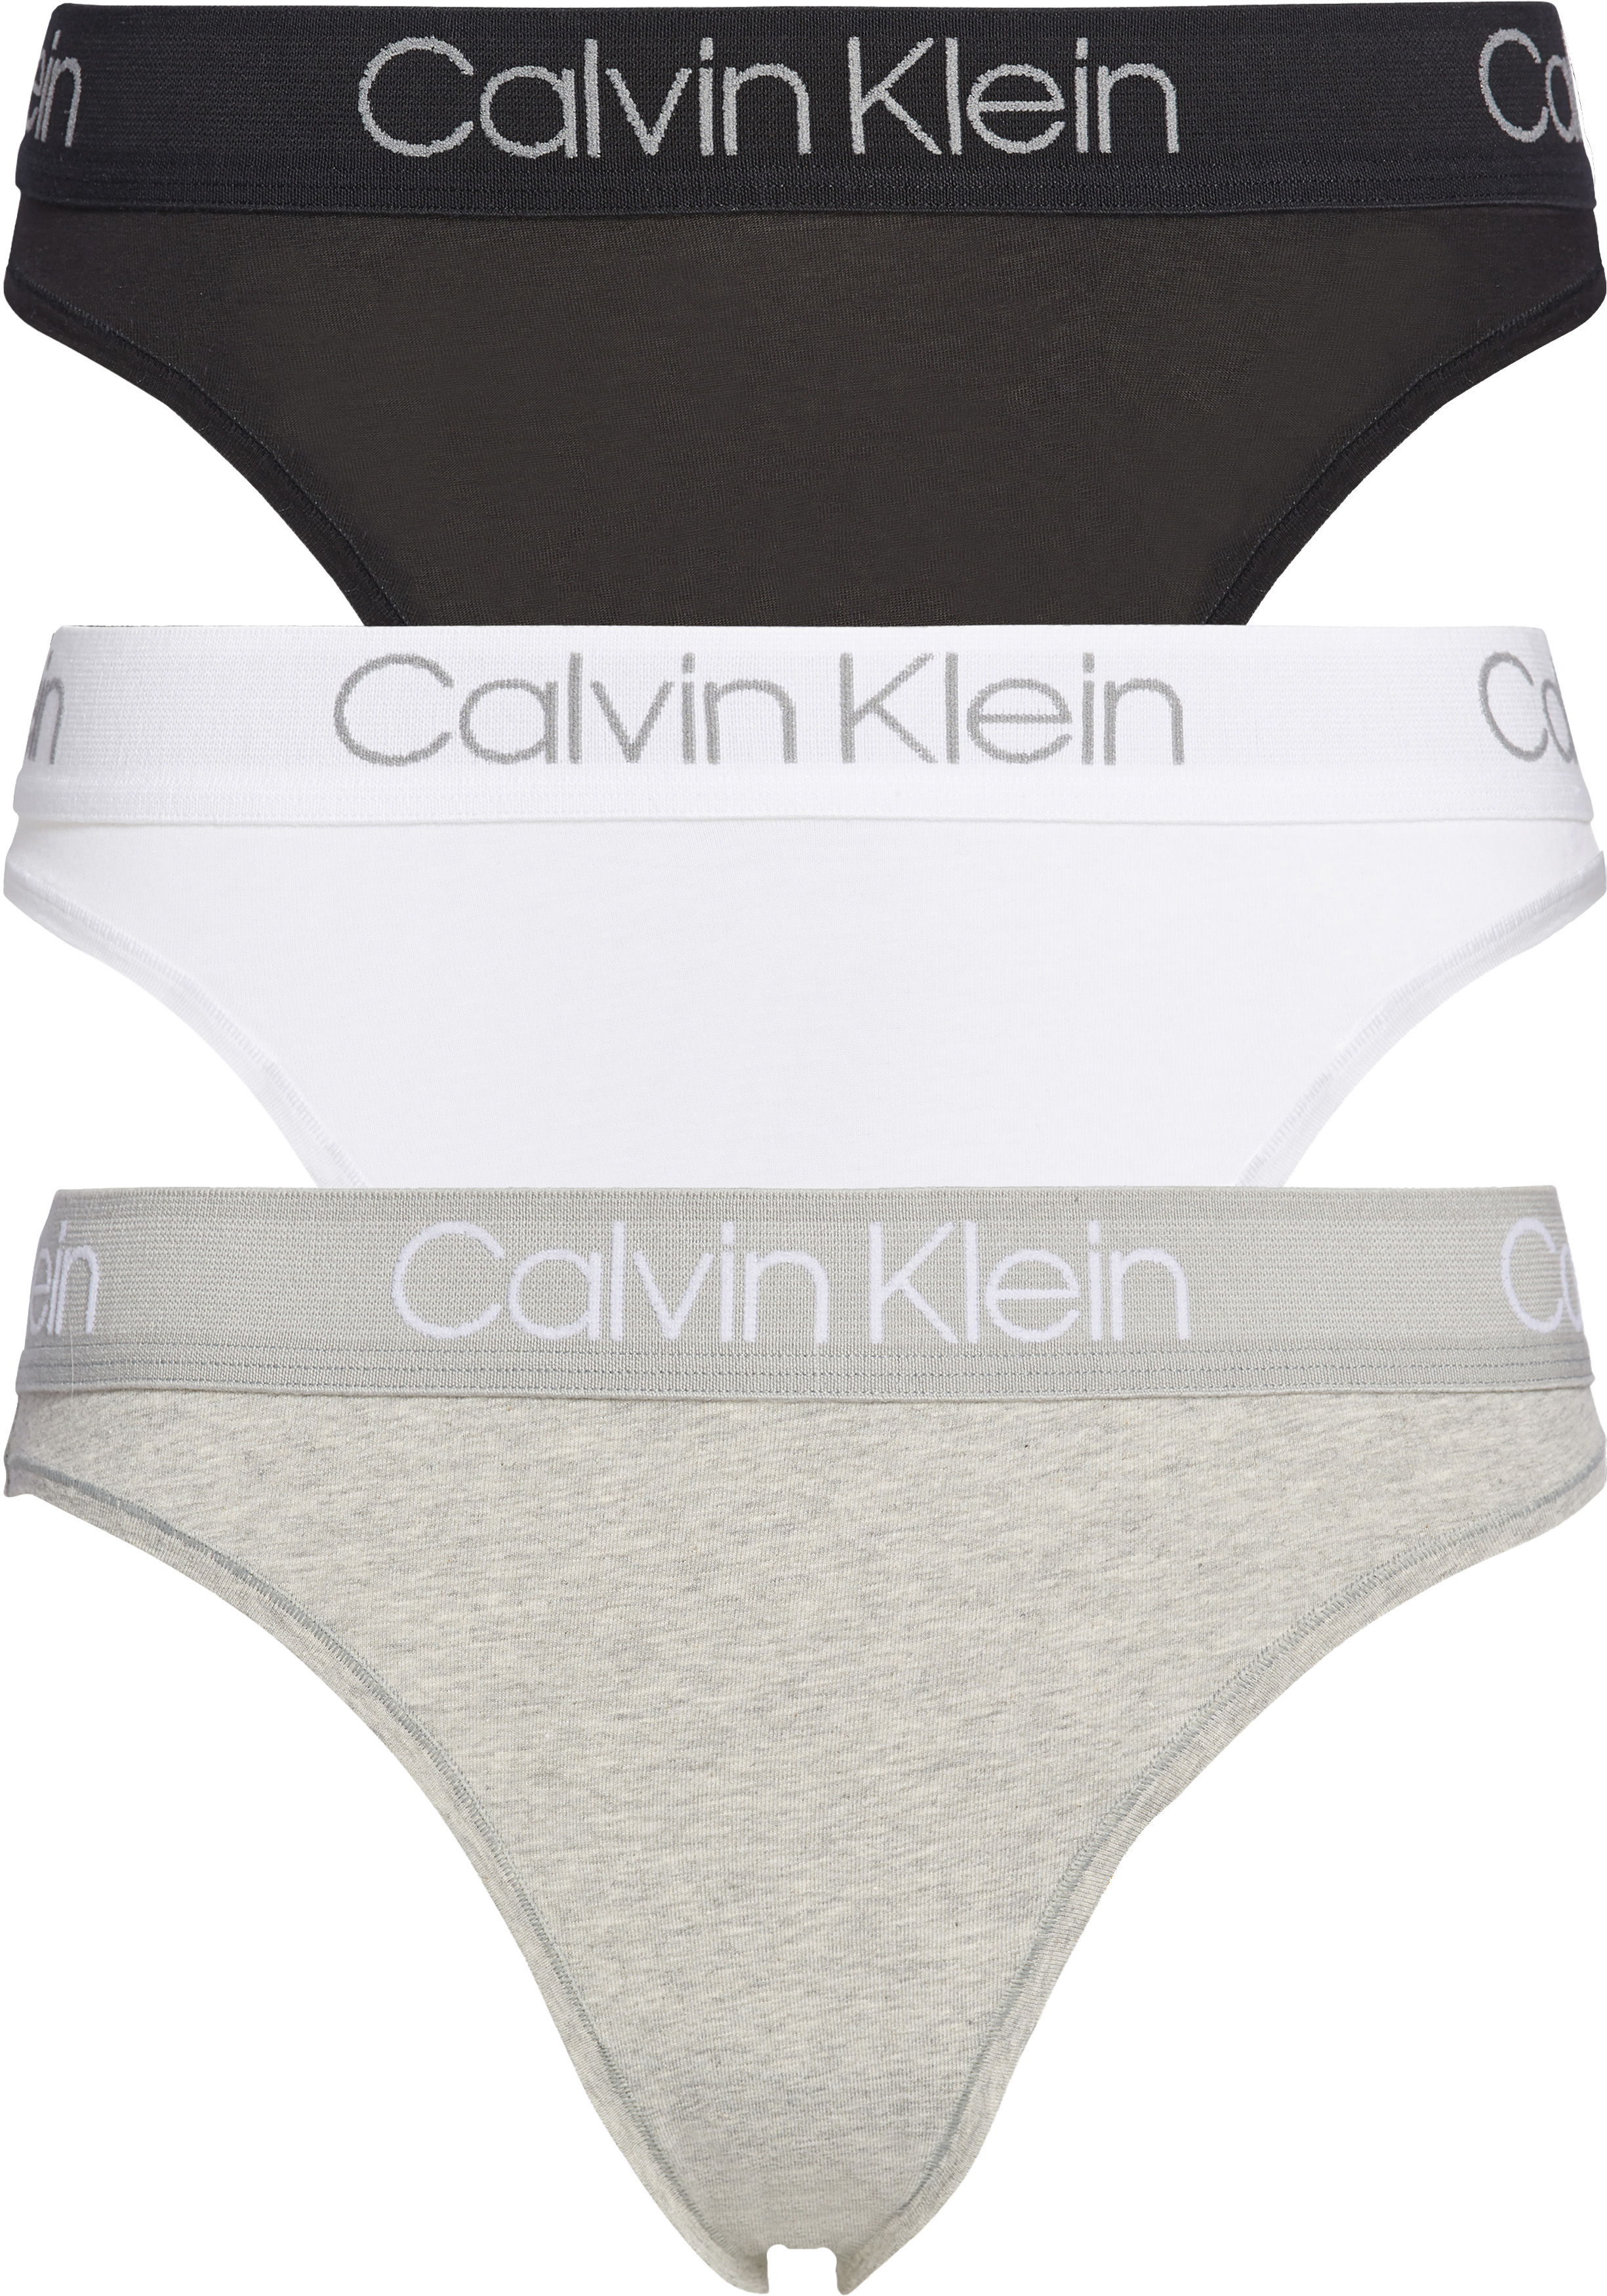 vasteland personeel commentator Calvin Klein dames tanga slips (3-pack), met hoge beenuitsnijding,... -  vakantie DEALS: bestel vele artikelen van topmerken met korting